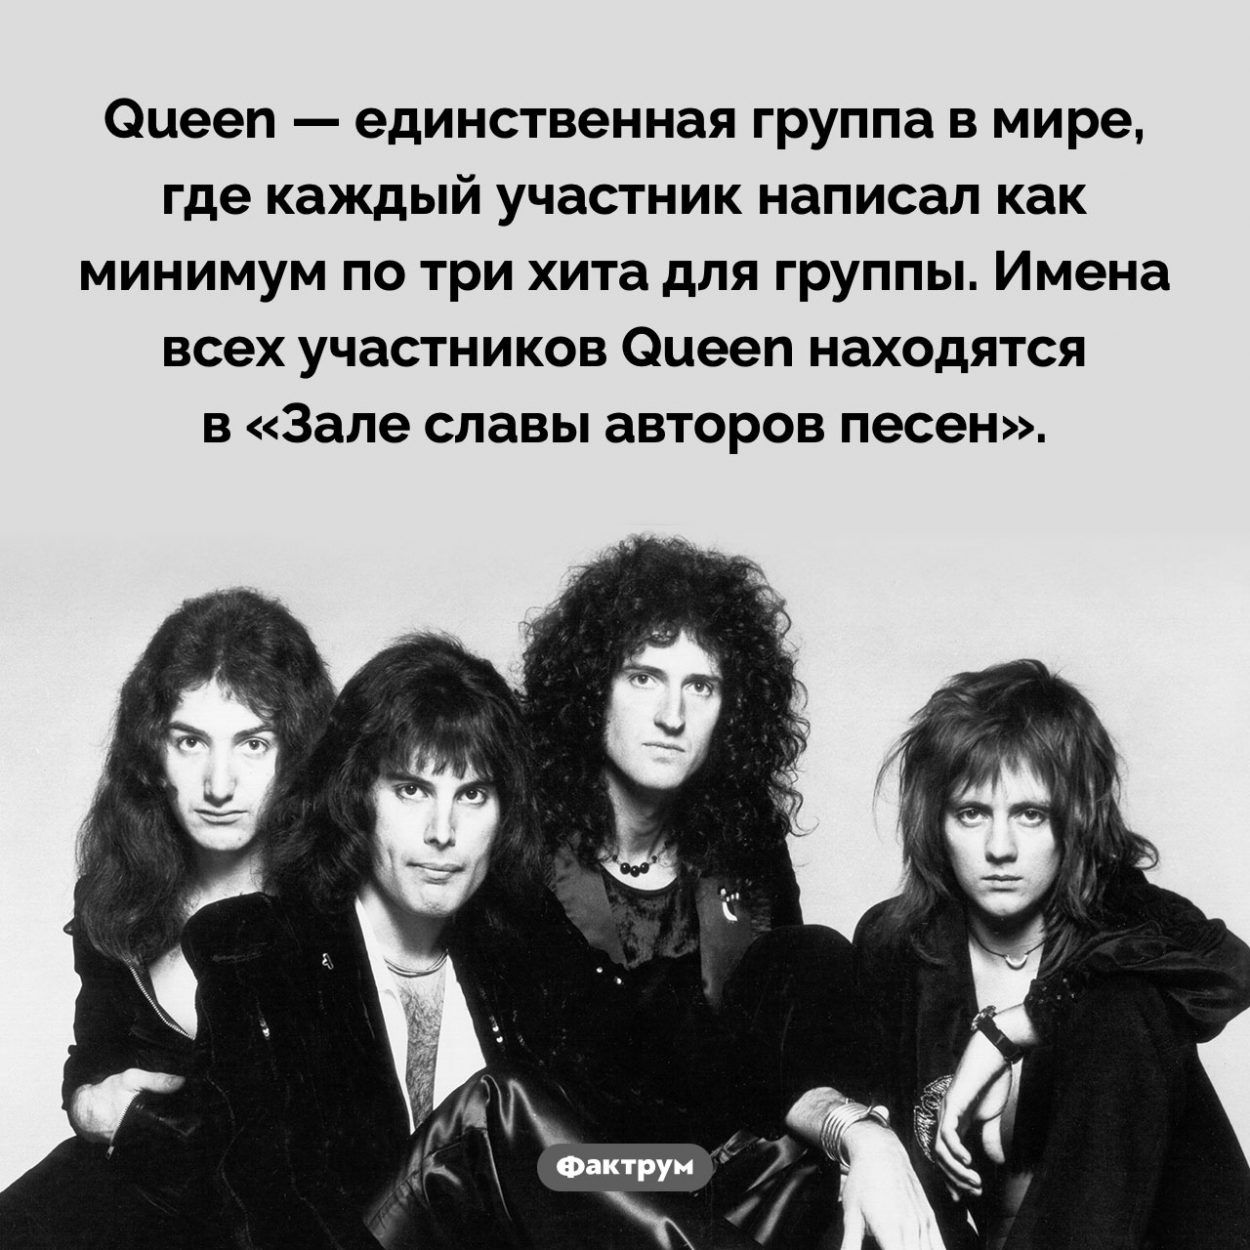 Все участники Queen написали хиты для группы. Queen — единственная группа в мире, где каждый участник написал как минимум по три хита для группы. Имена всех участников Queen находятся в «Зале славы авторов песен».